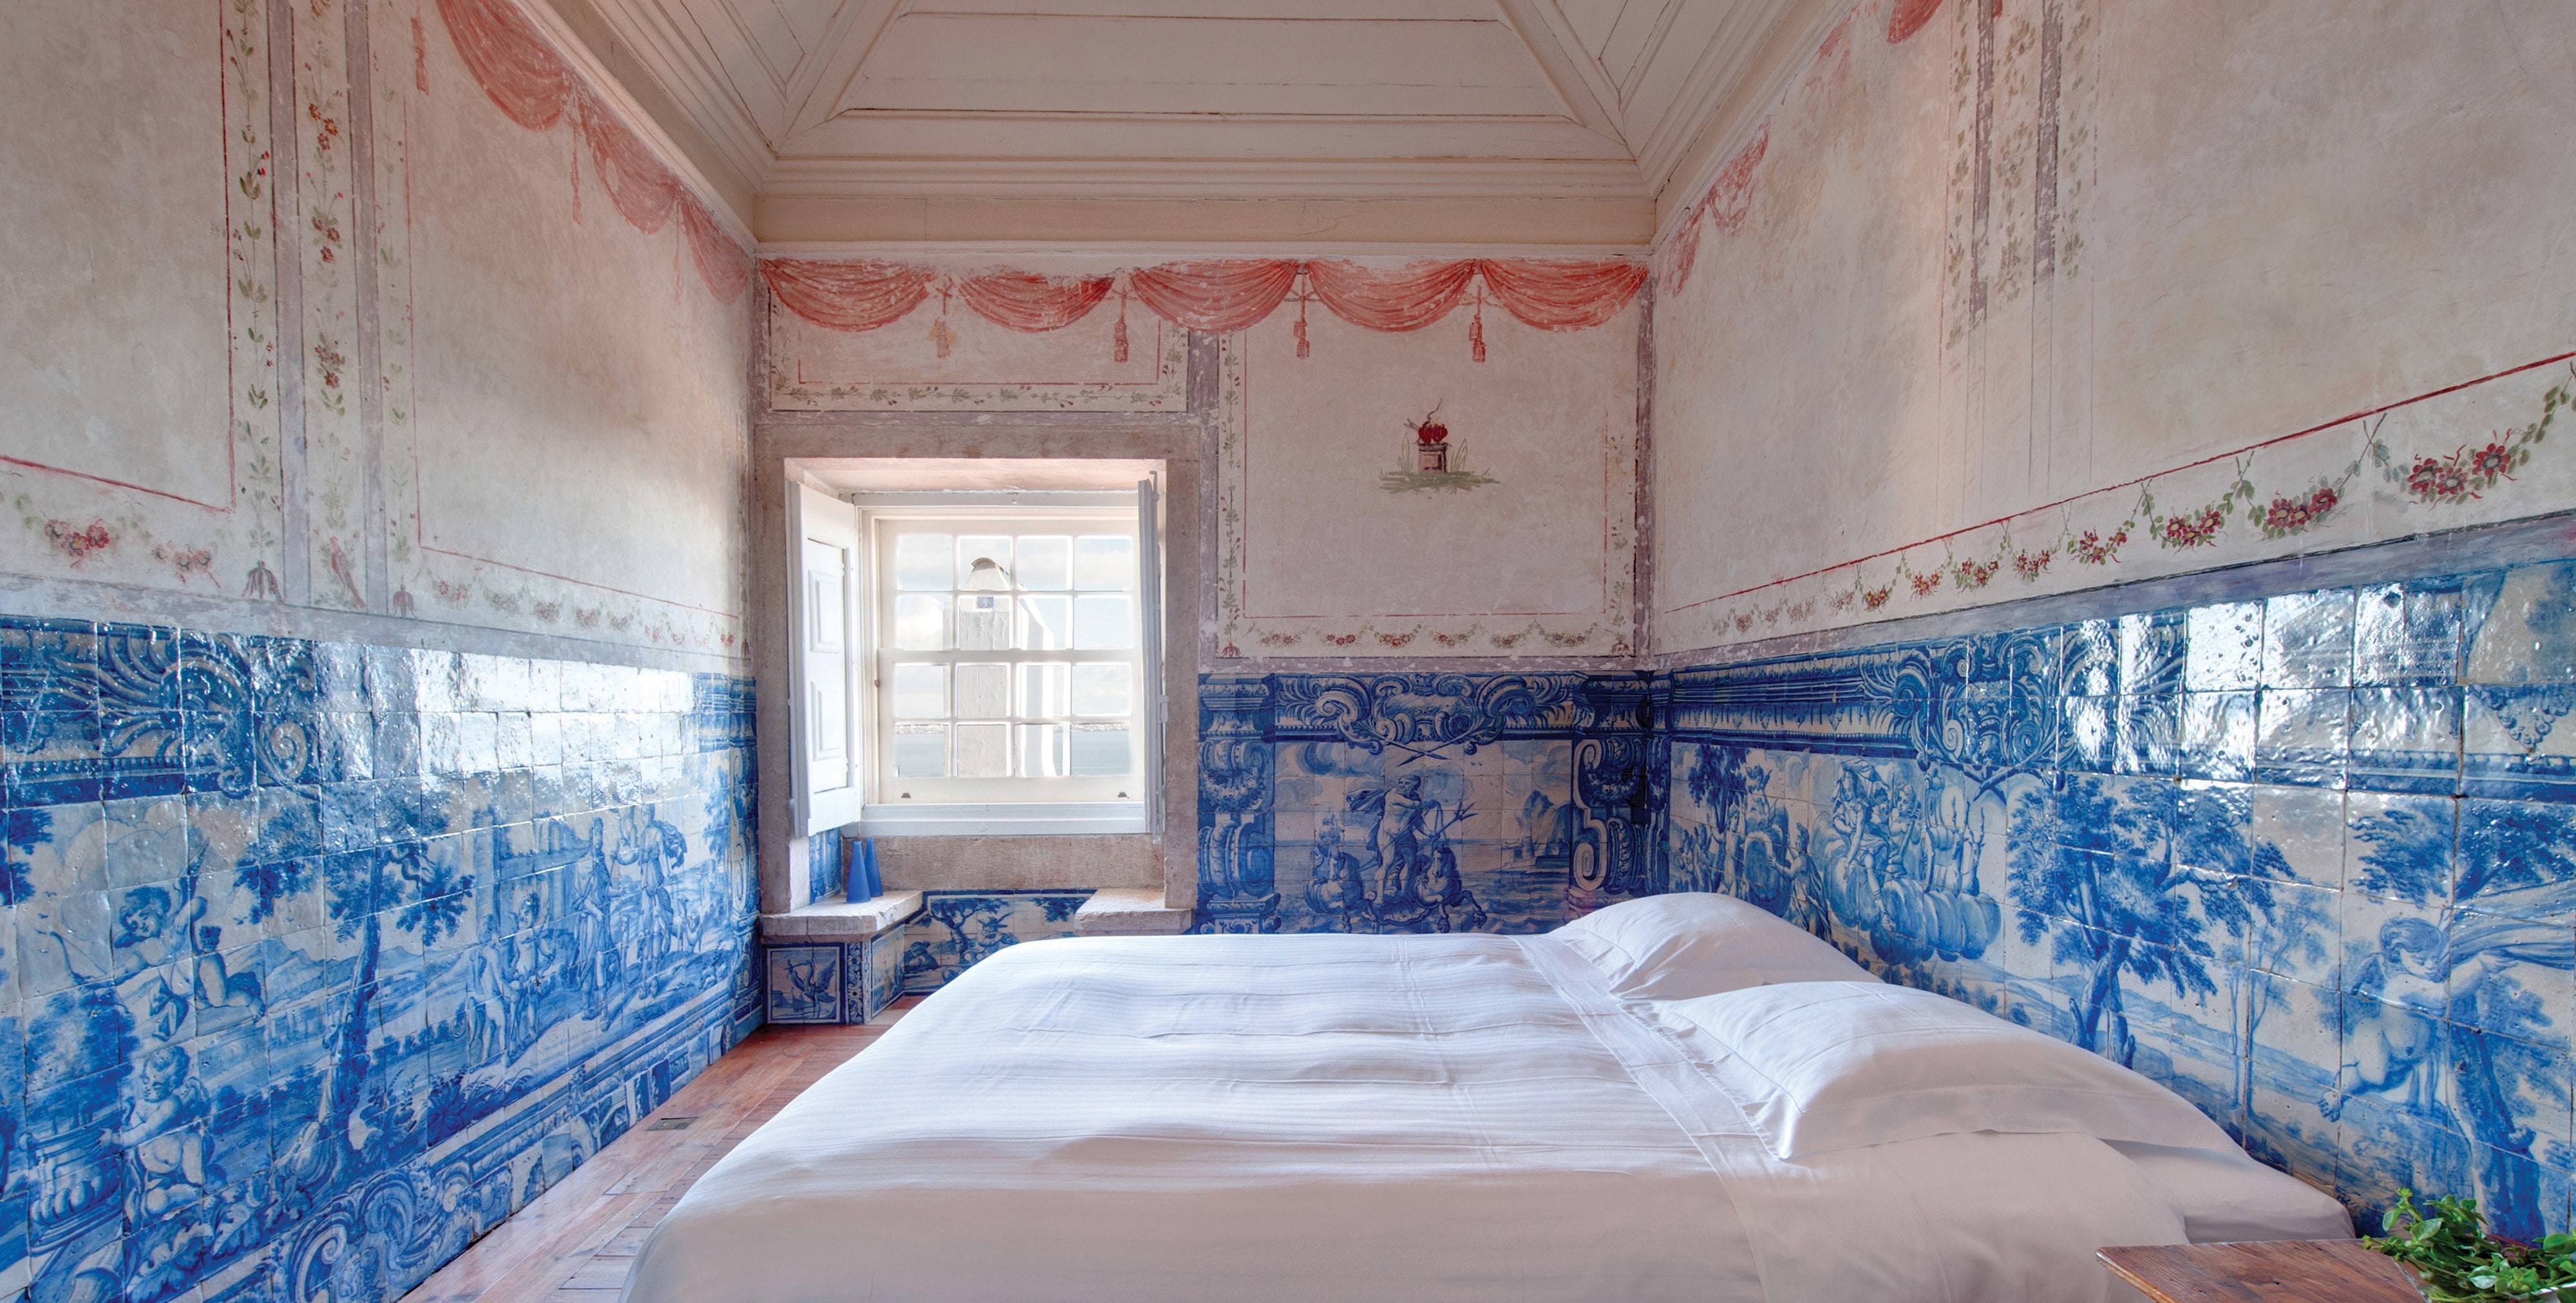 Décor do dia: quarto com decoração rústica e azulejos portugueses (Foto: Divulgação)